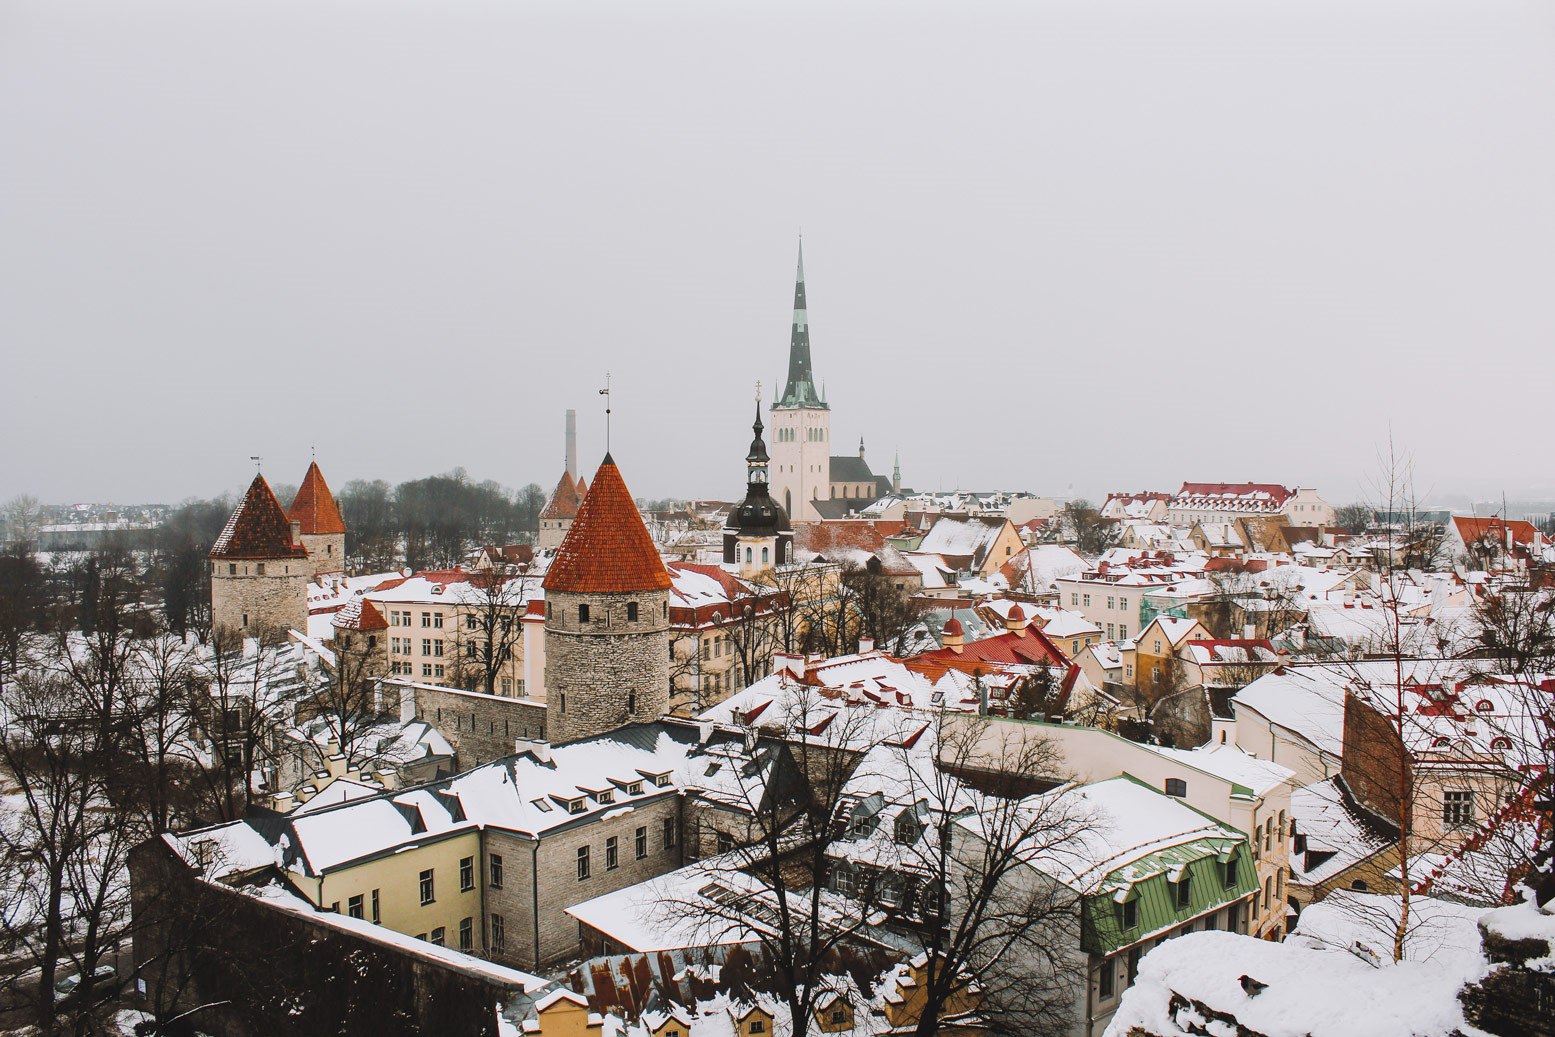 Được ví như một bảo tàng trung cổ sống động giữa dòng chảy hiện đại, thành phố Tallinn của Estonia là điểm đến hấp dẫn bậc nhất dành cho những người đam mê lịch sử và nghệ thuật.